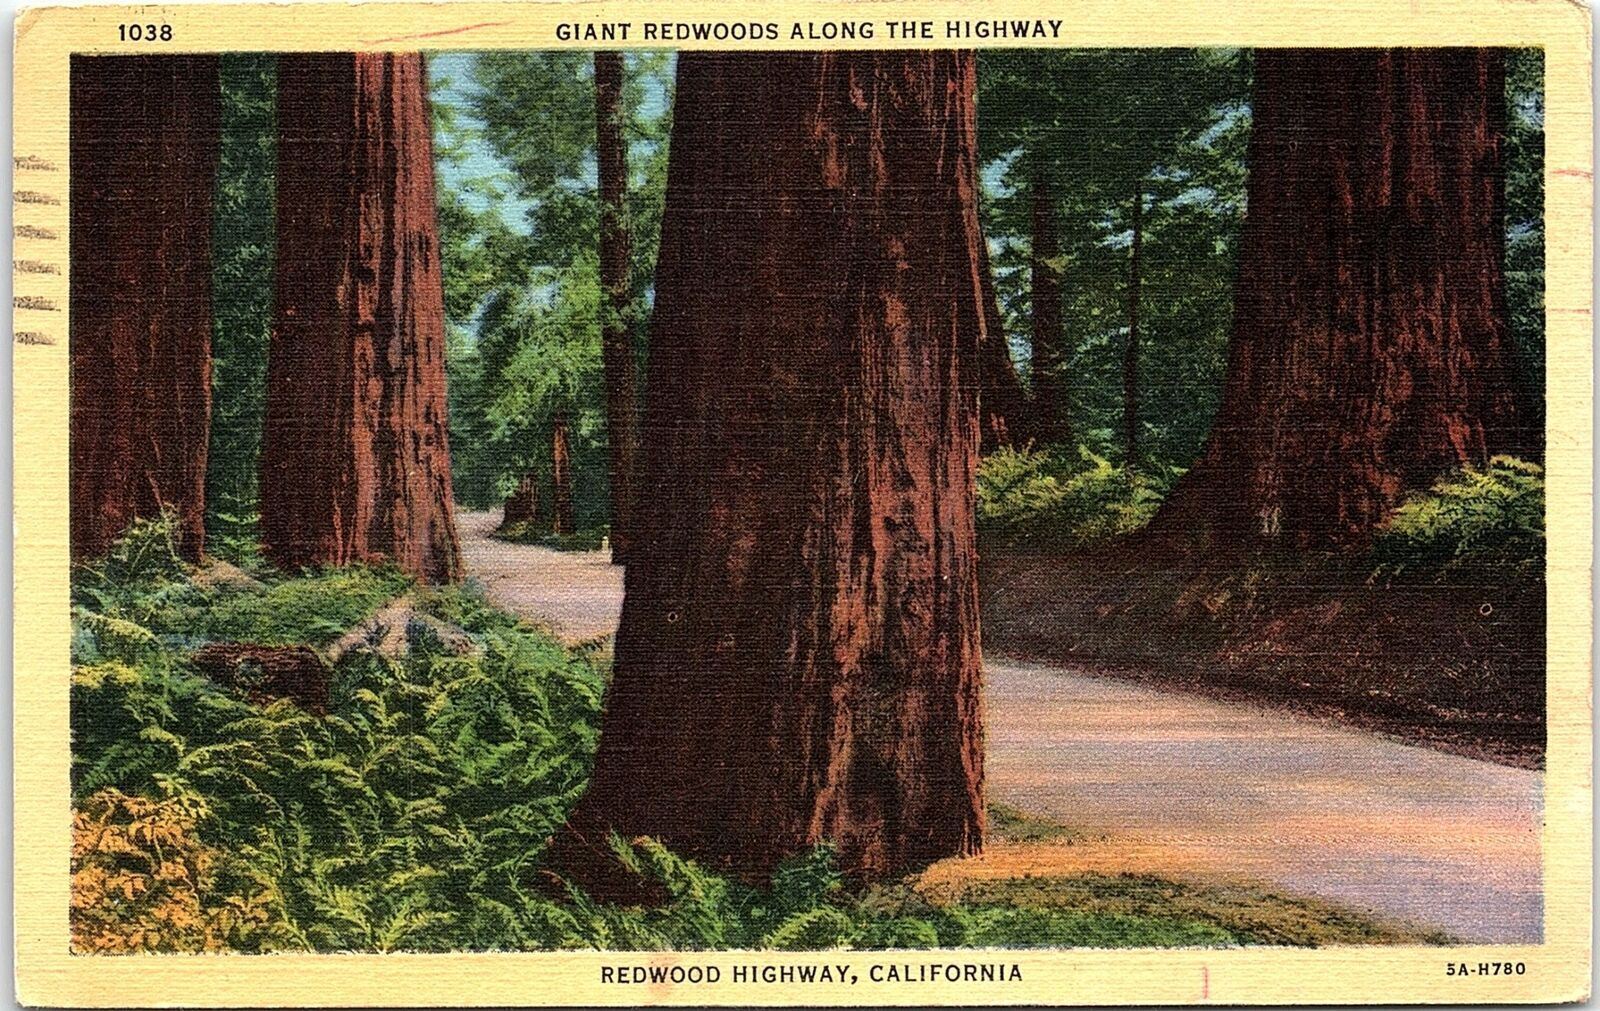 1930s REDWOOD HIGHWAY CALIFORNIA GIANT REDWOODS HIGHWAY LINEN POSTCARD 42-179